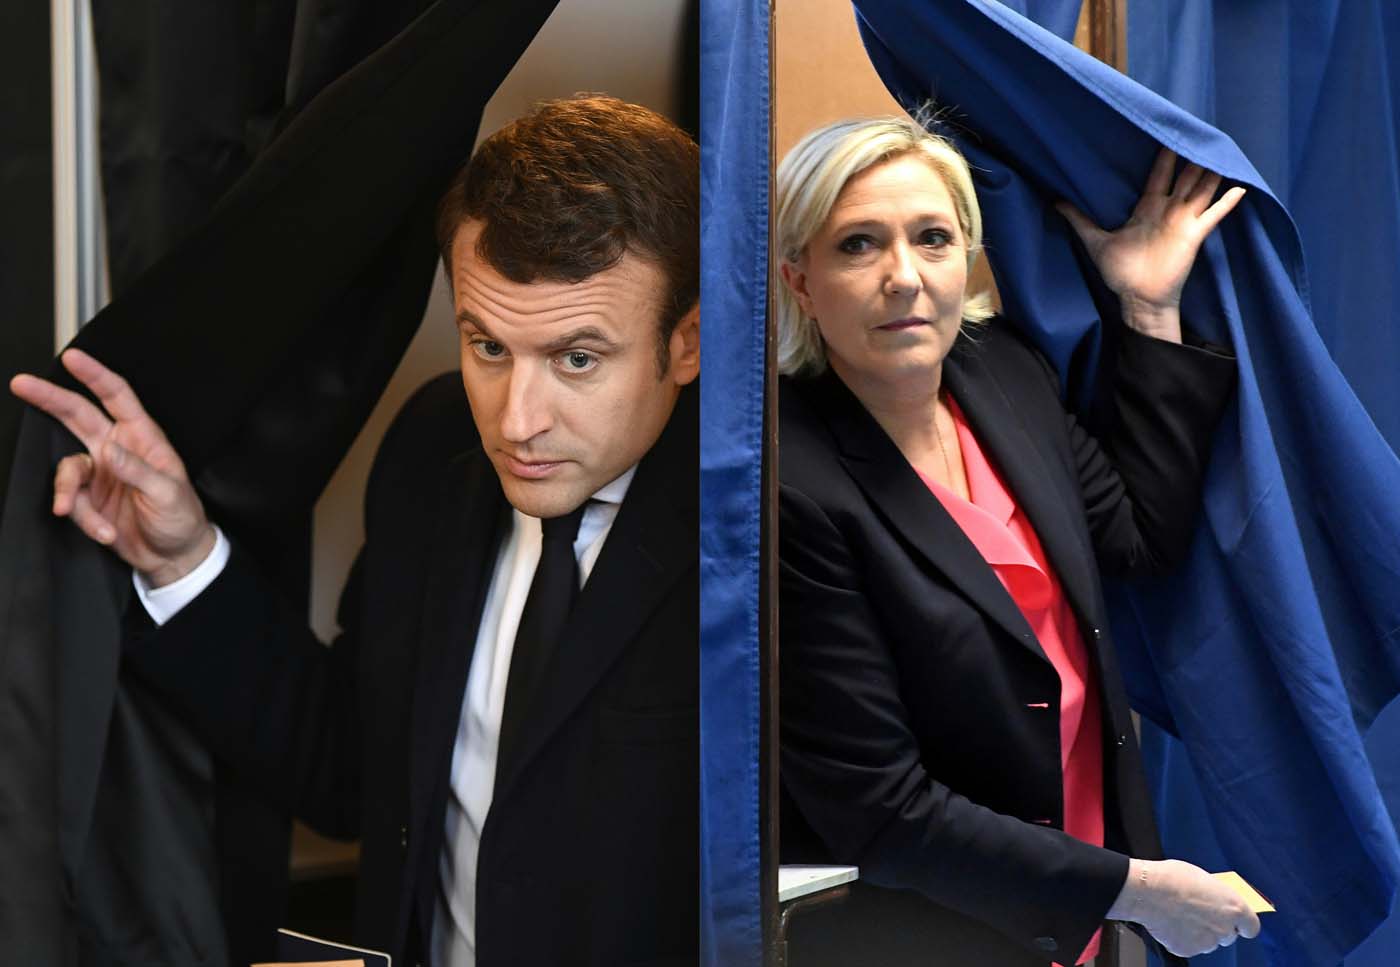 Marine Le Pen desea éxito a Macron frente a los enormes desafíos de Francia